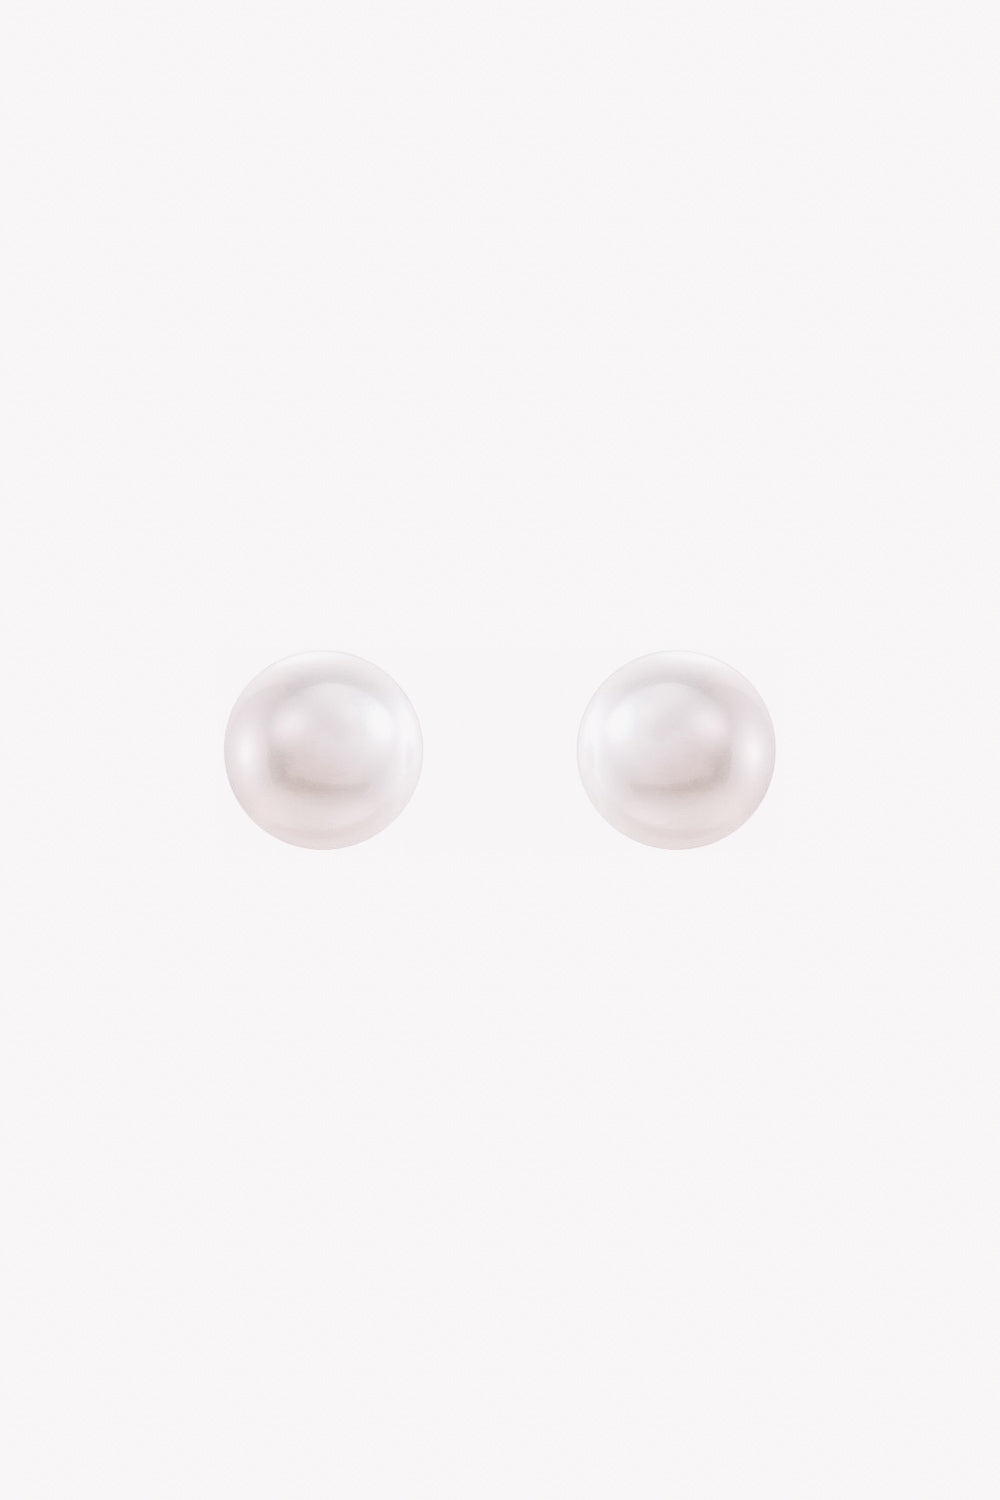 Akoya Pearl Earring Studs | 14K Gold